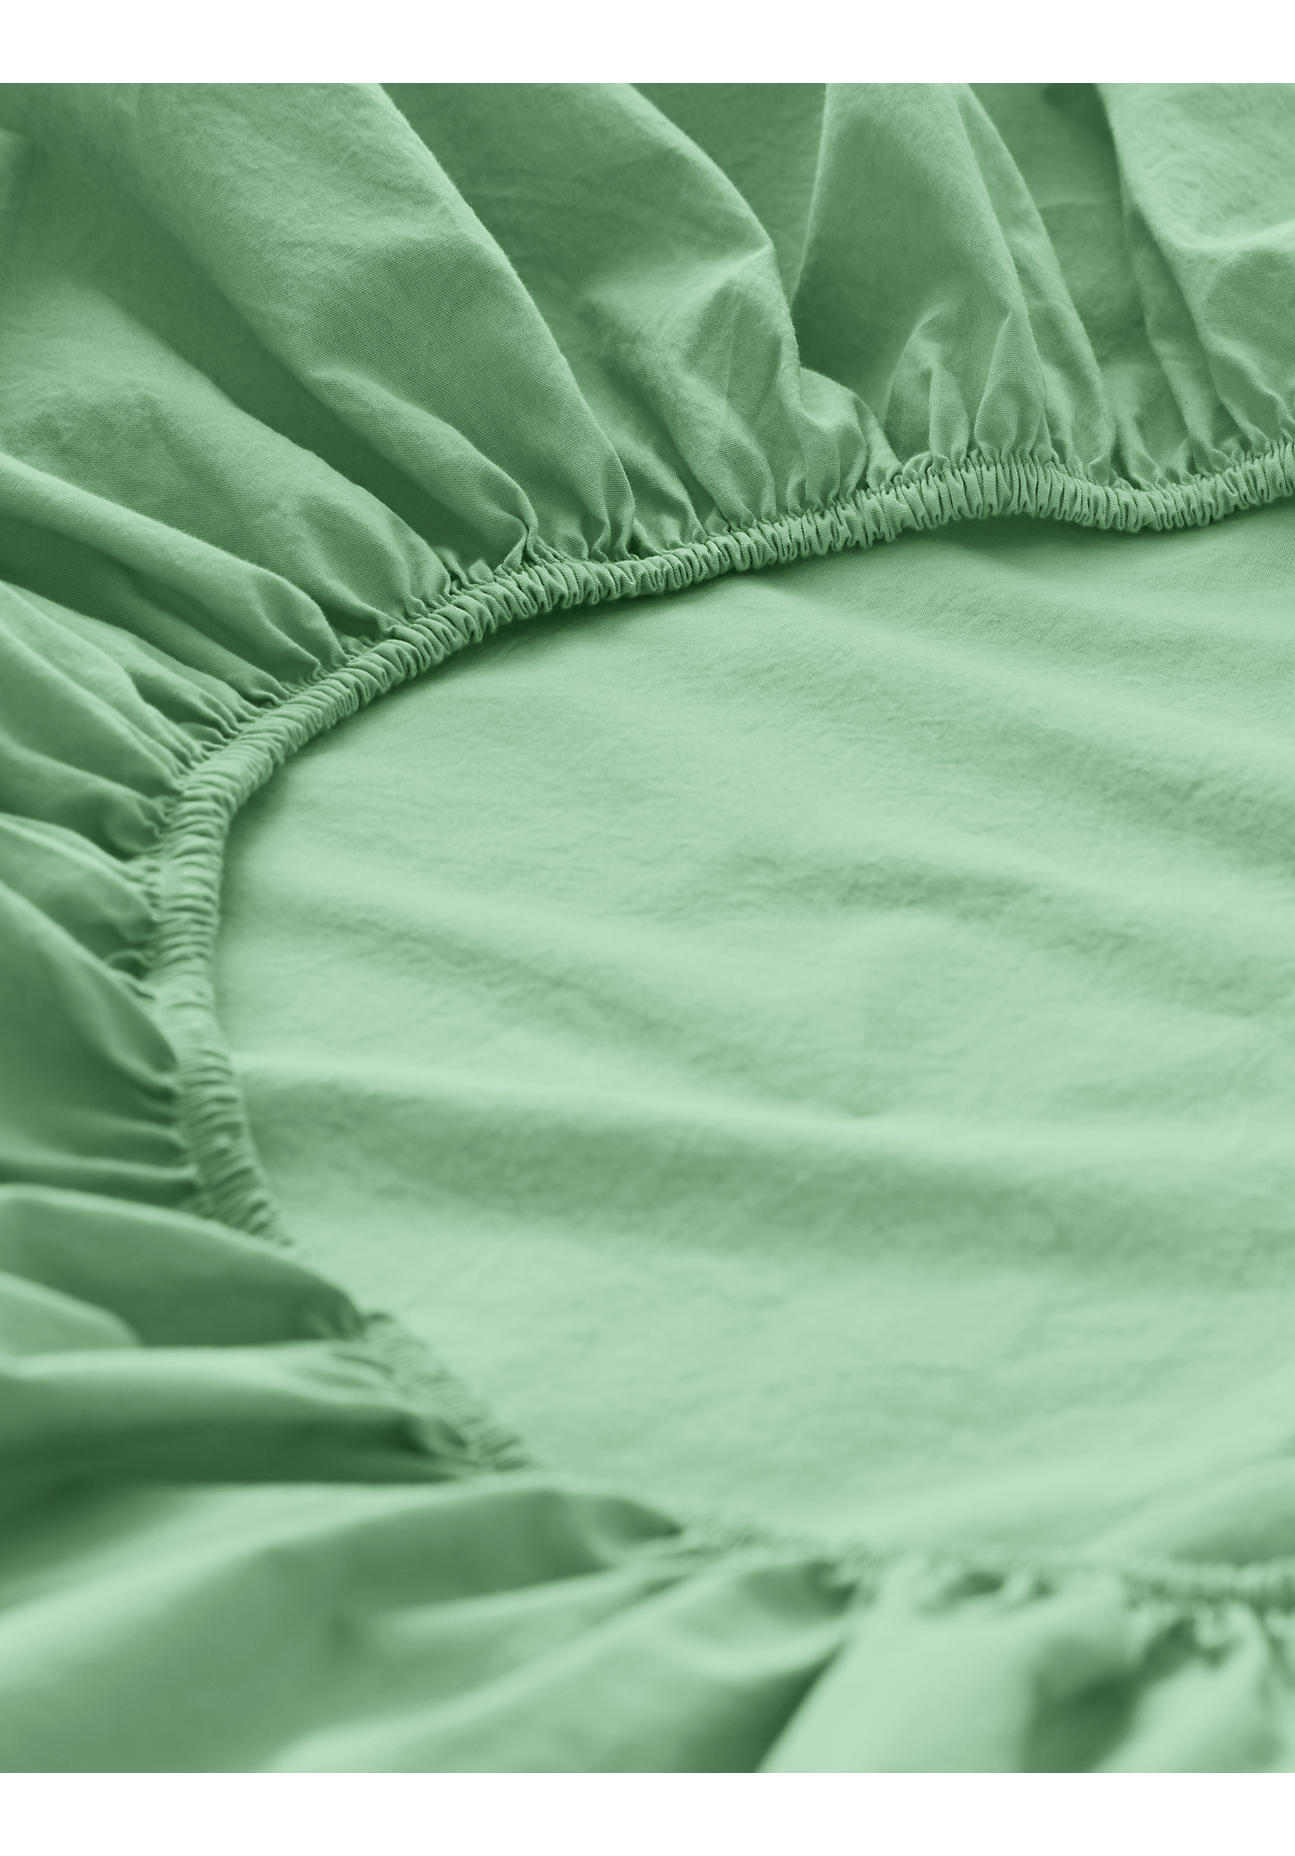 hessnatur Perkal Spannbettlaken aus Bio-Baumwolle - grün - Größe 180x200 cm